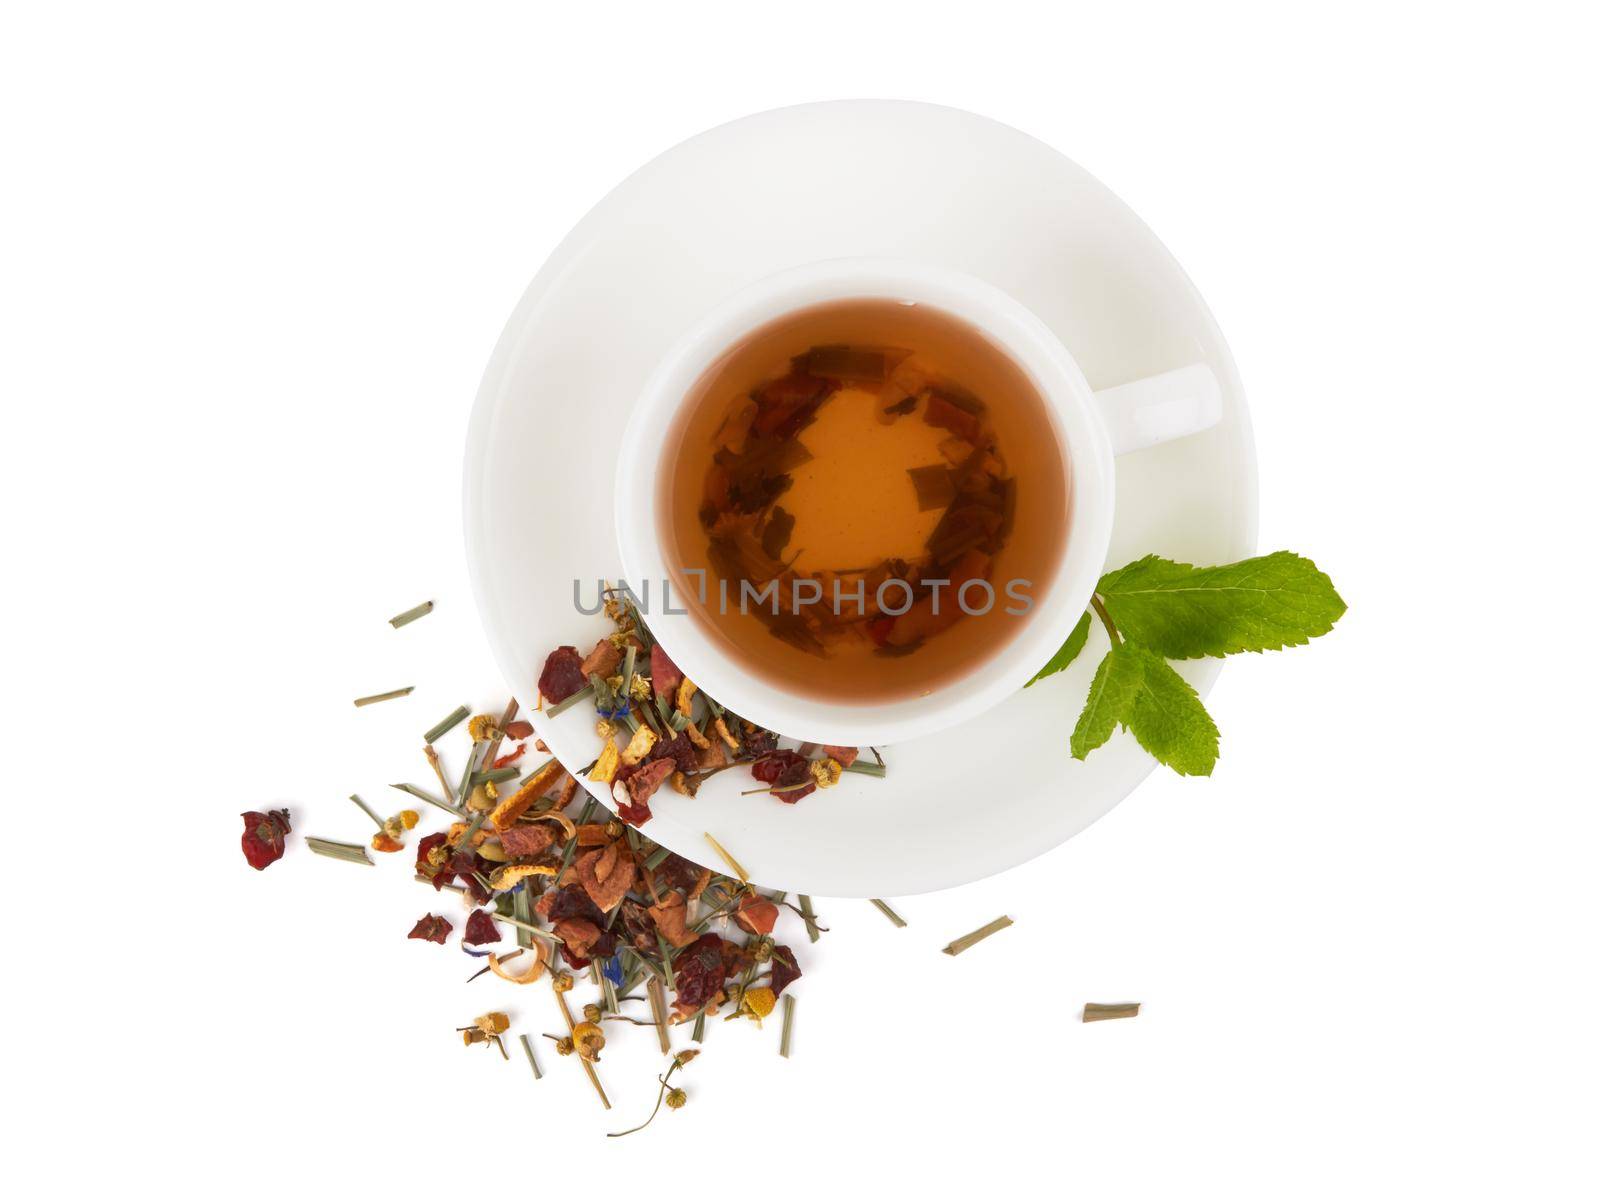 Herbal tea with berries by pioneer111